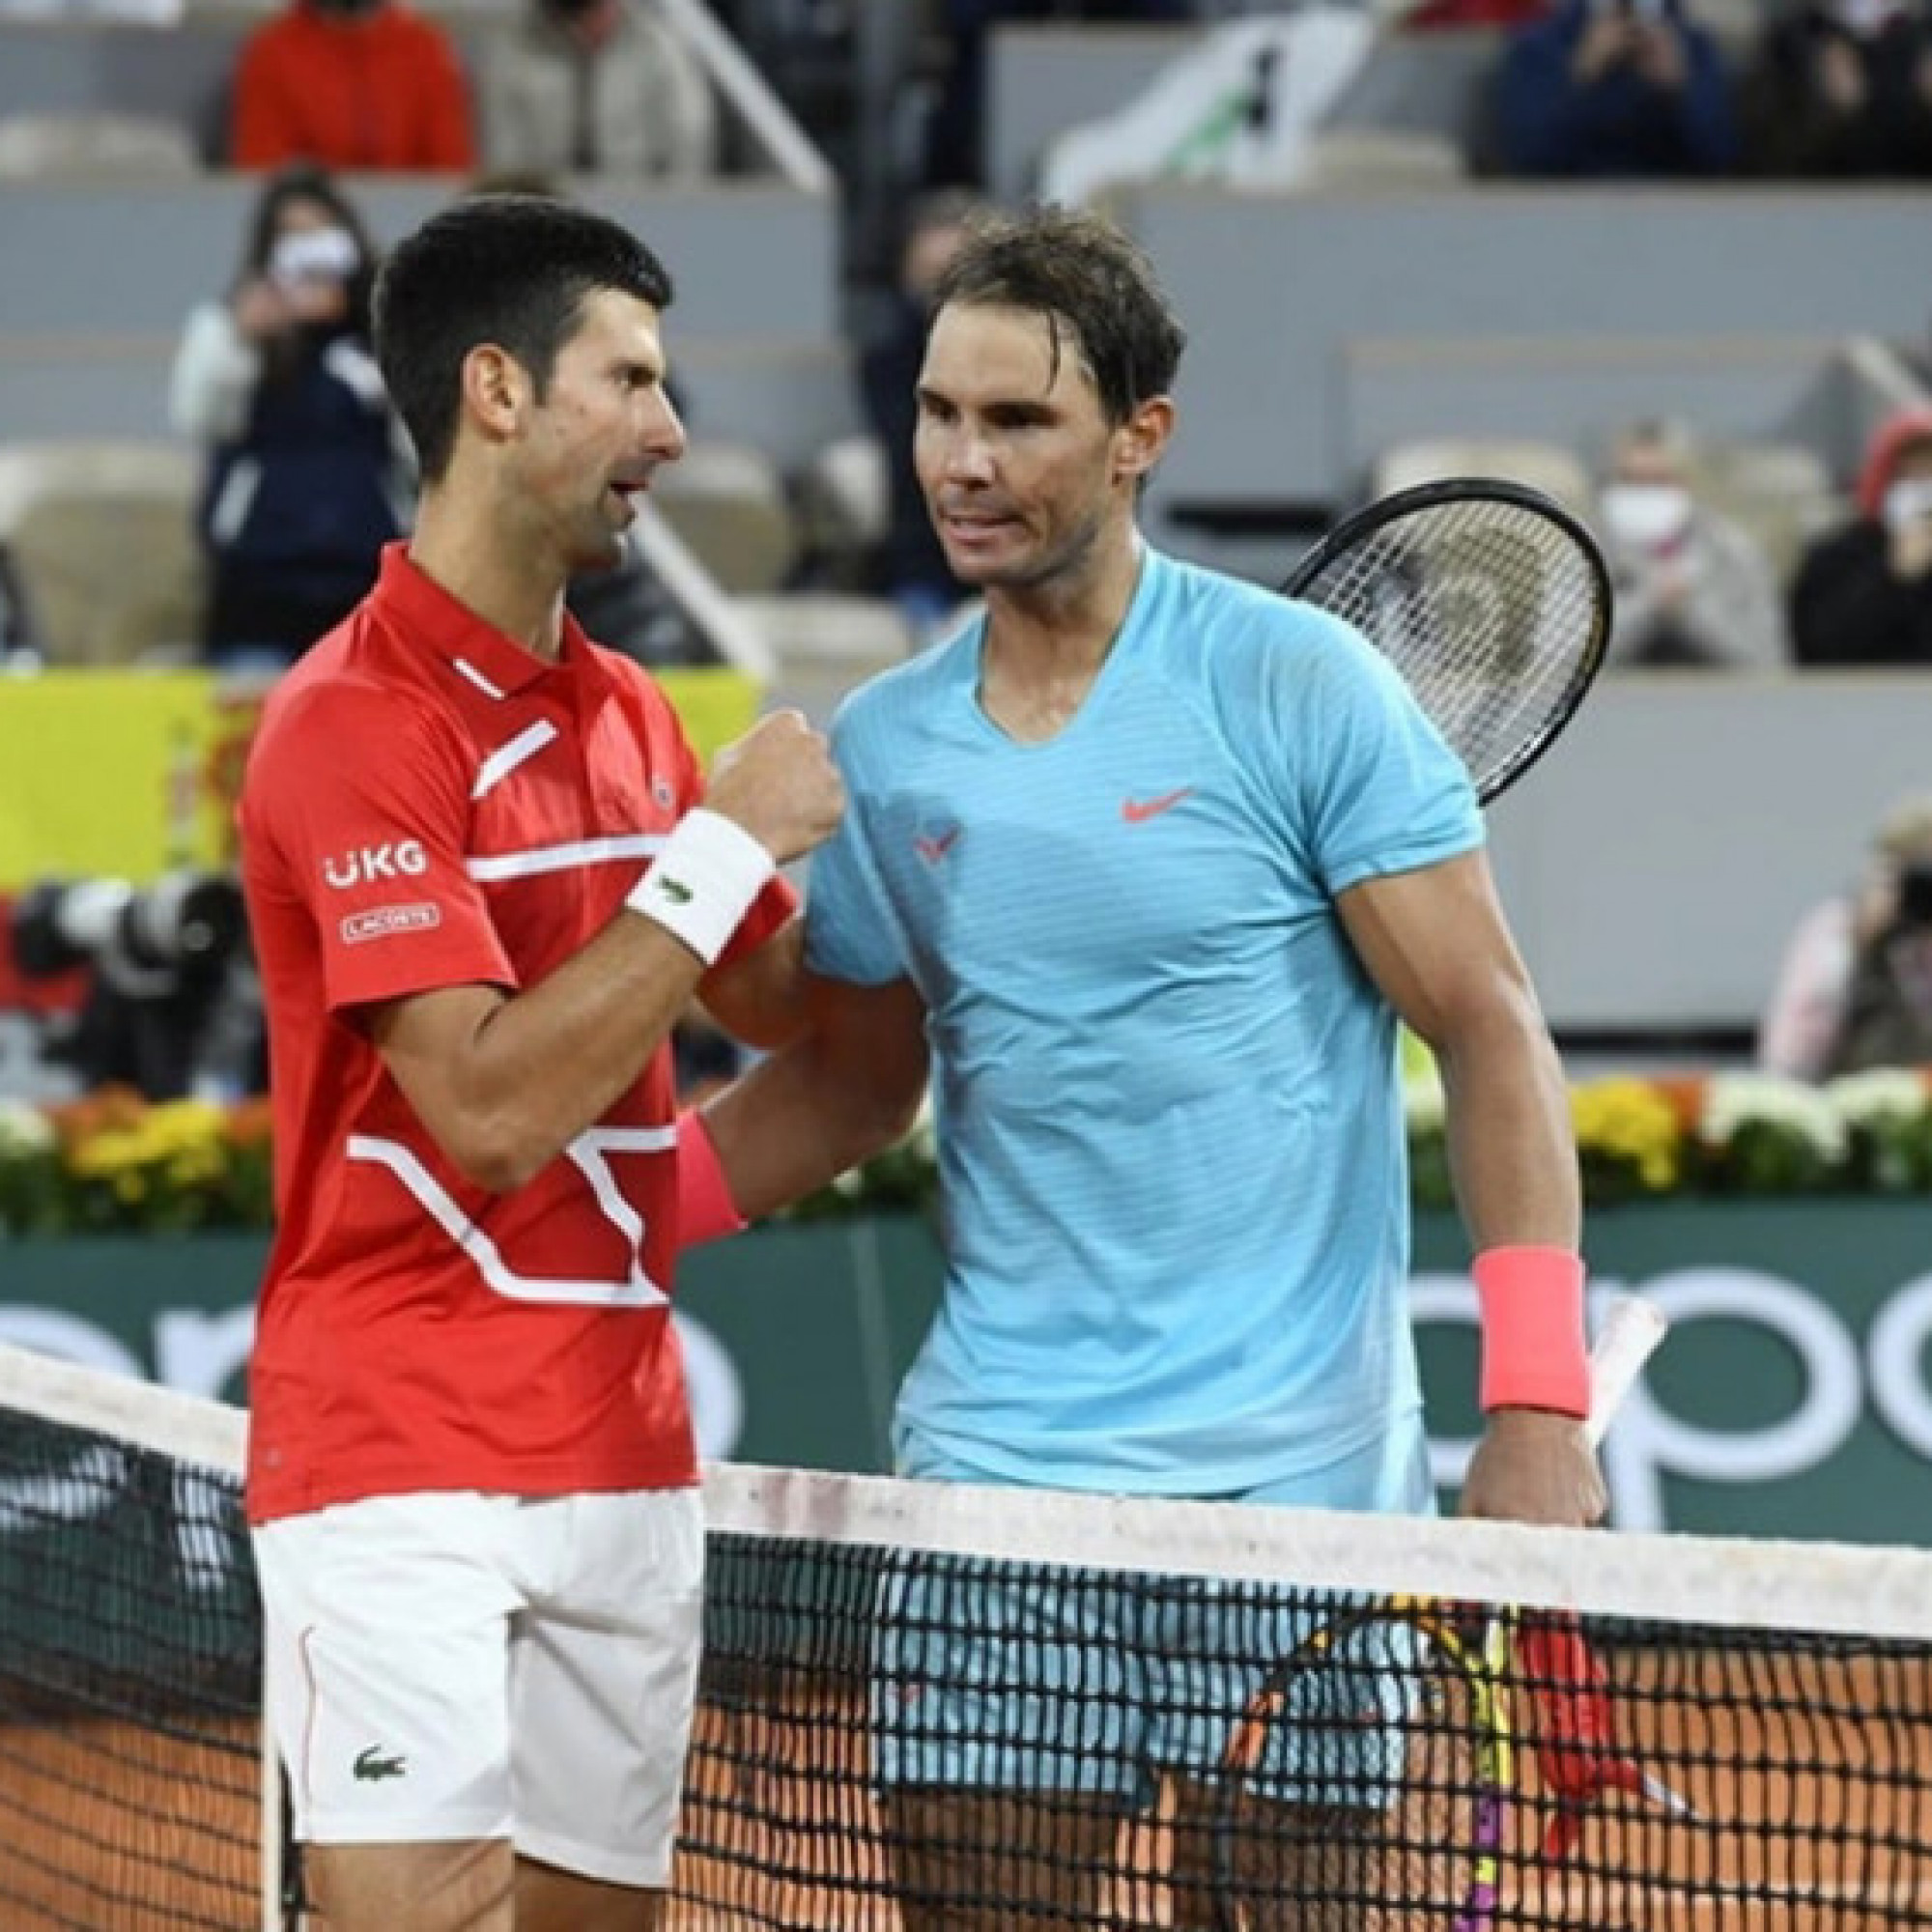  - Nóng nhất thể thao sáng 22/5: Djokovic ca tụng Nadal trước thềm Roland Garros